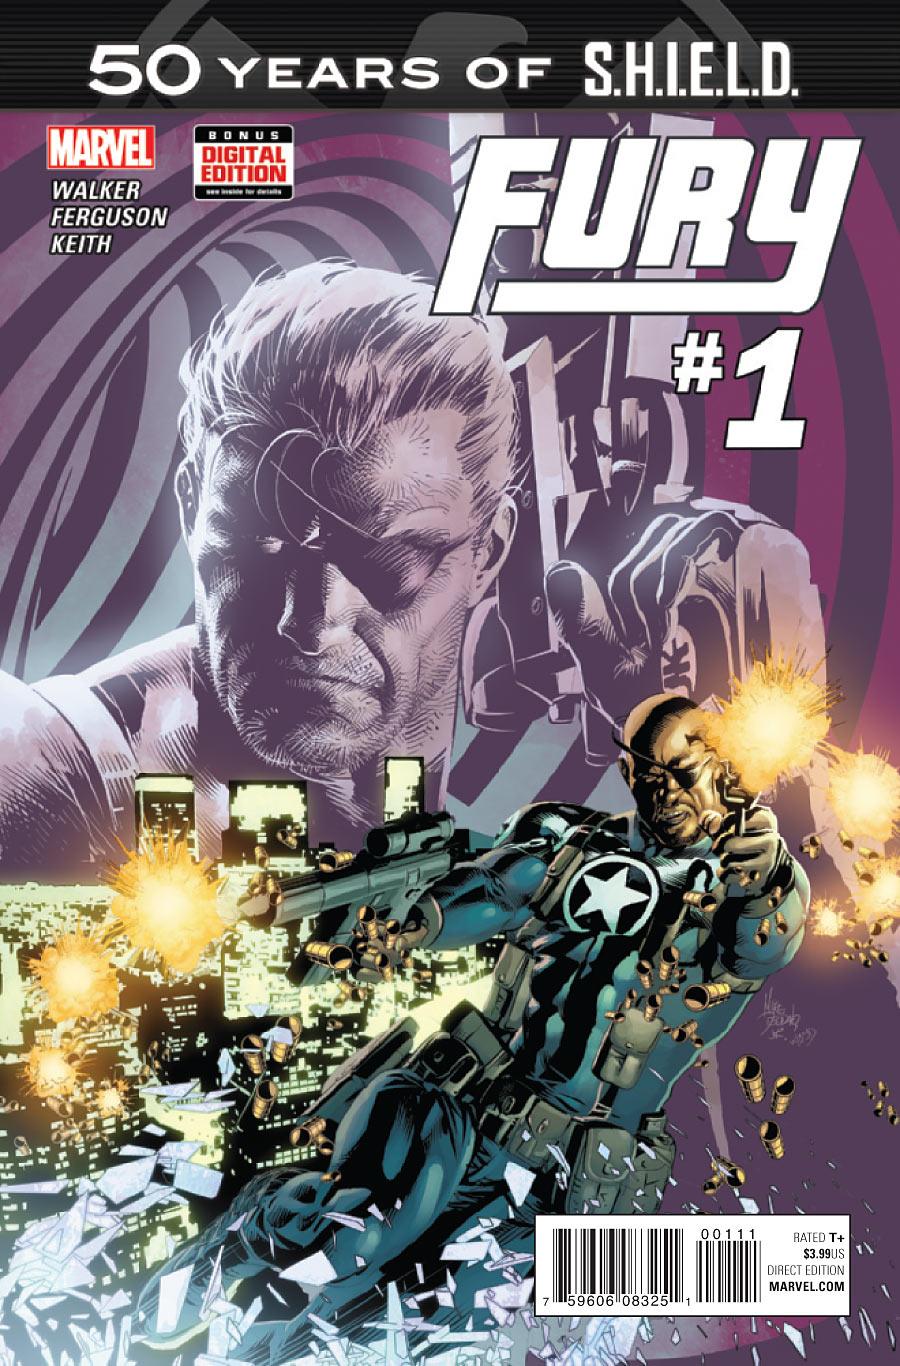 Fury: S.H.I.E.L.D. 50th Anniversary Vol. 1 #1